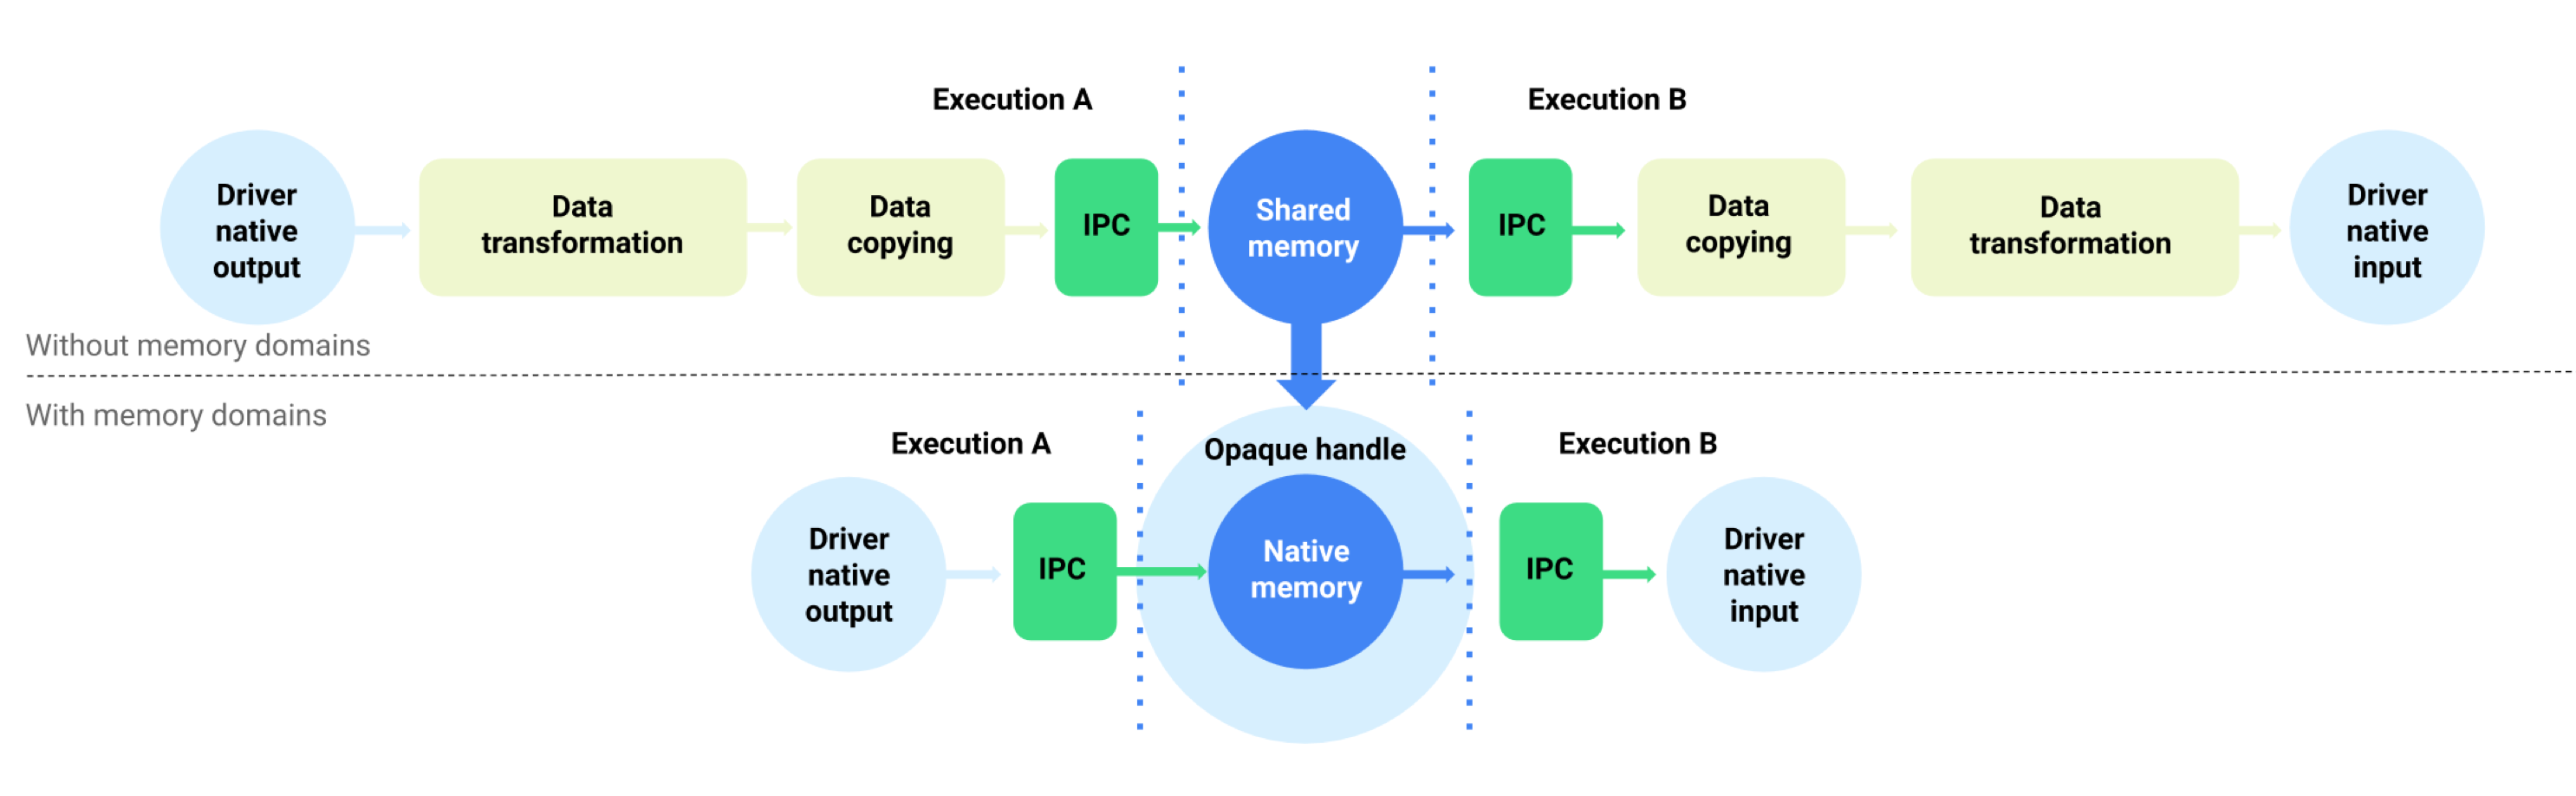 Buforuj przepływ danych z domenami pamięci i bez nich